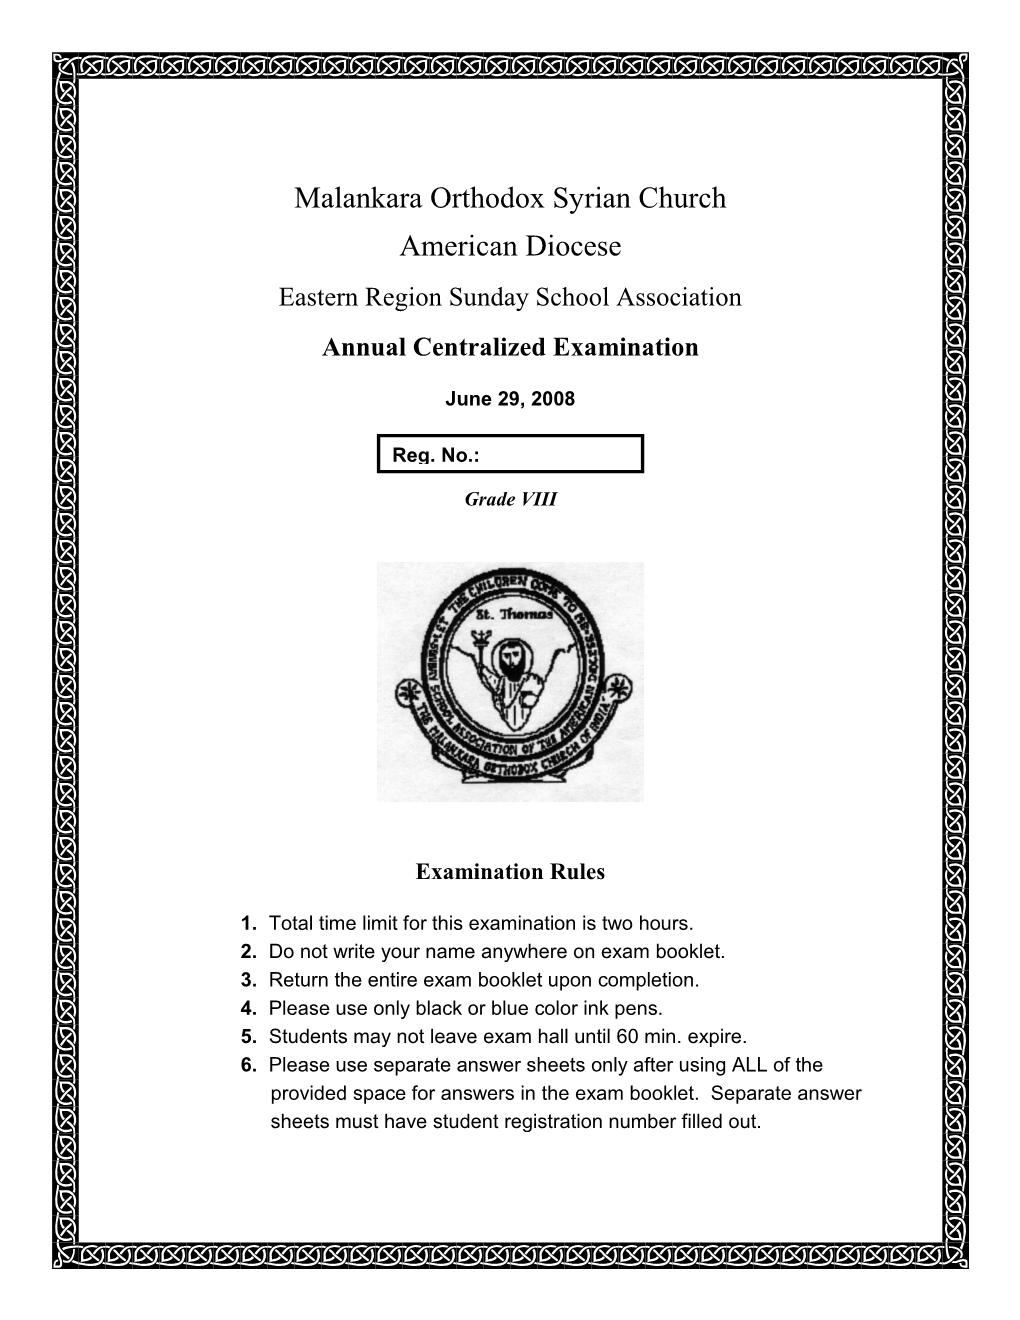 Malankara Orthodox Syrian Church American Diocese Eastern Region Sunday School Association Annual Centralized Examination